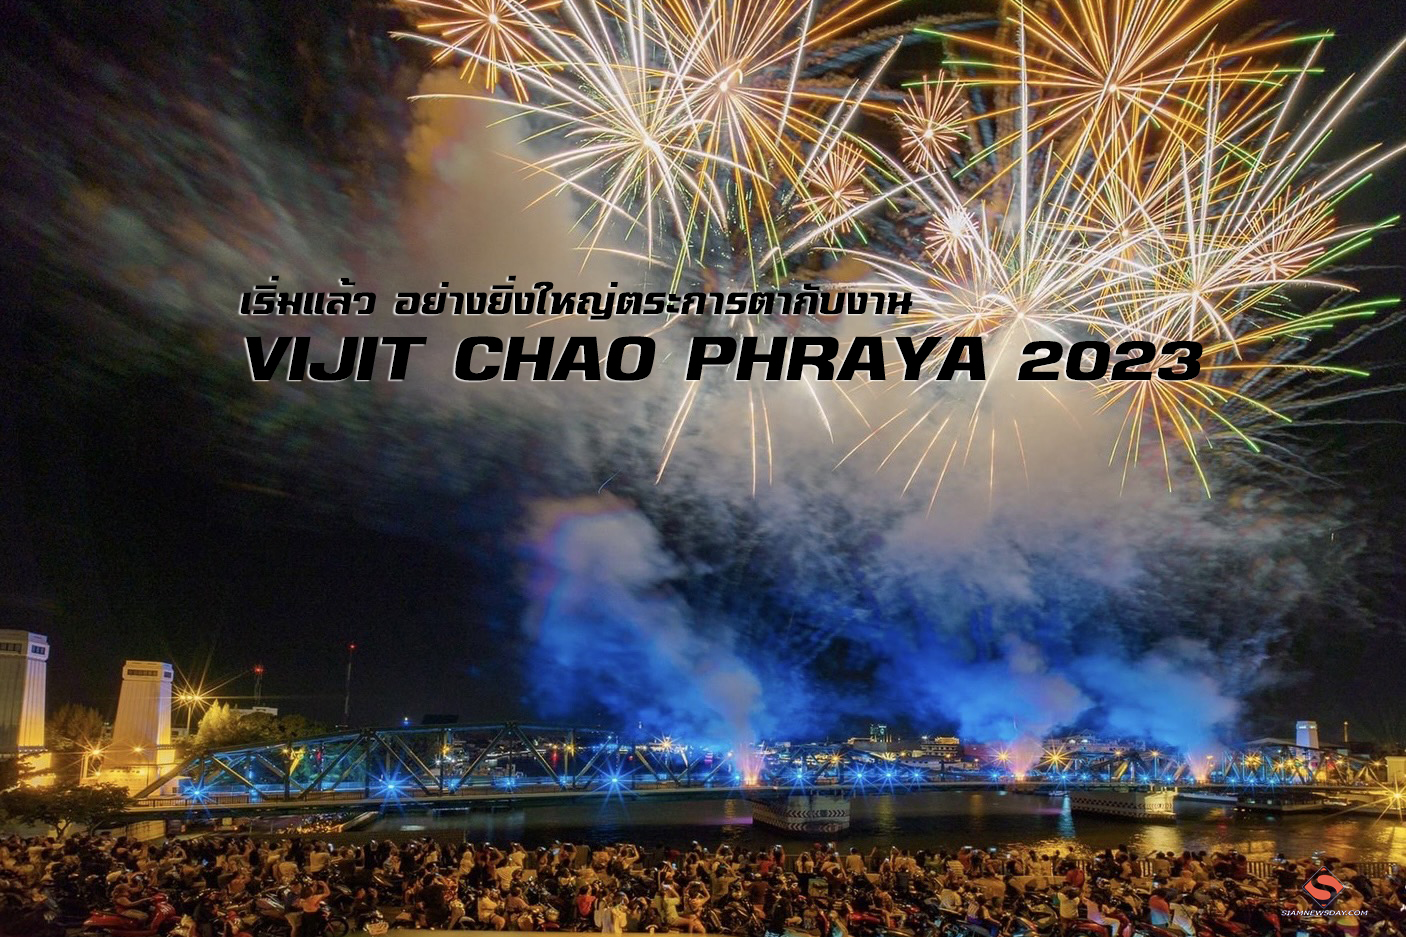 เริ่มแล้ว อย่างยิ่งใหญ่ตระการตากับงาน “VIJIT CHAO PHRAYA 2023”